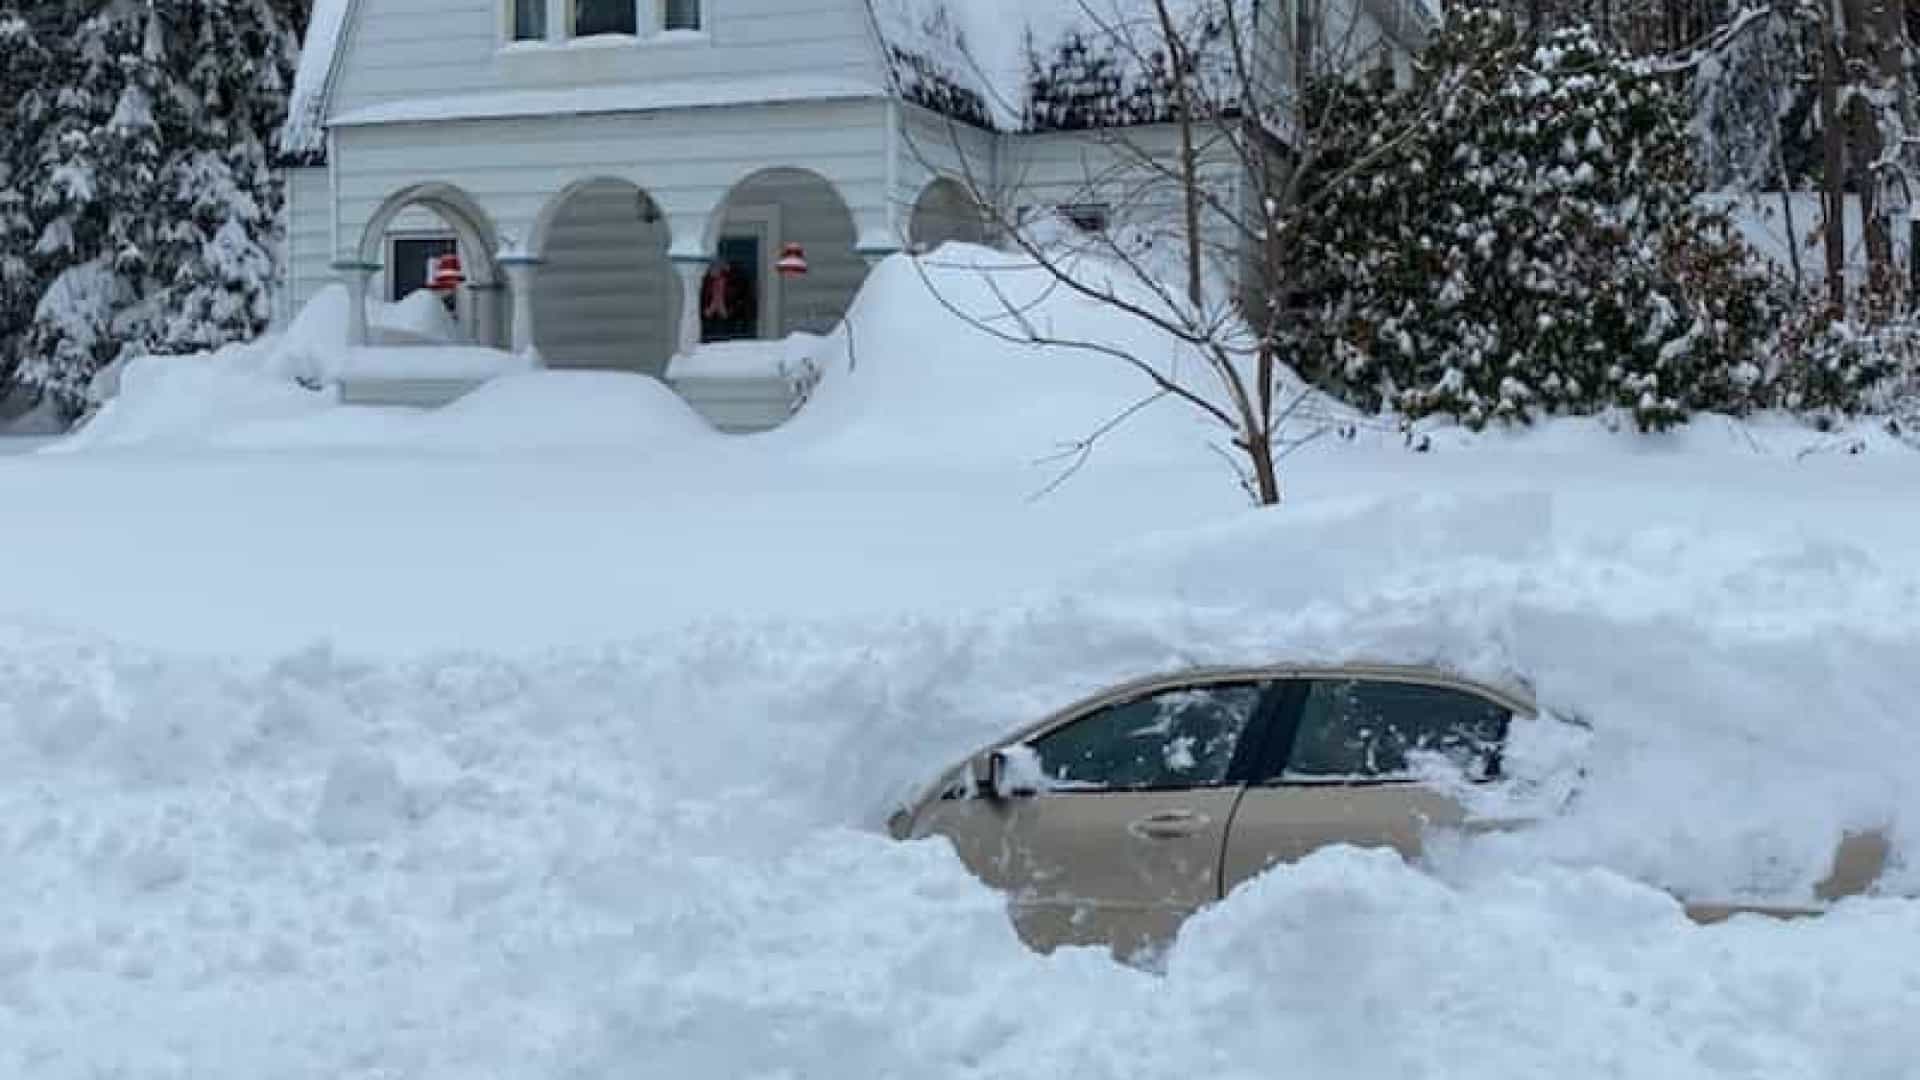 Nova York: Homem resgatado após 10 horas preso no carro coberto de neve